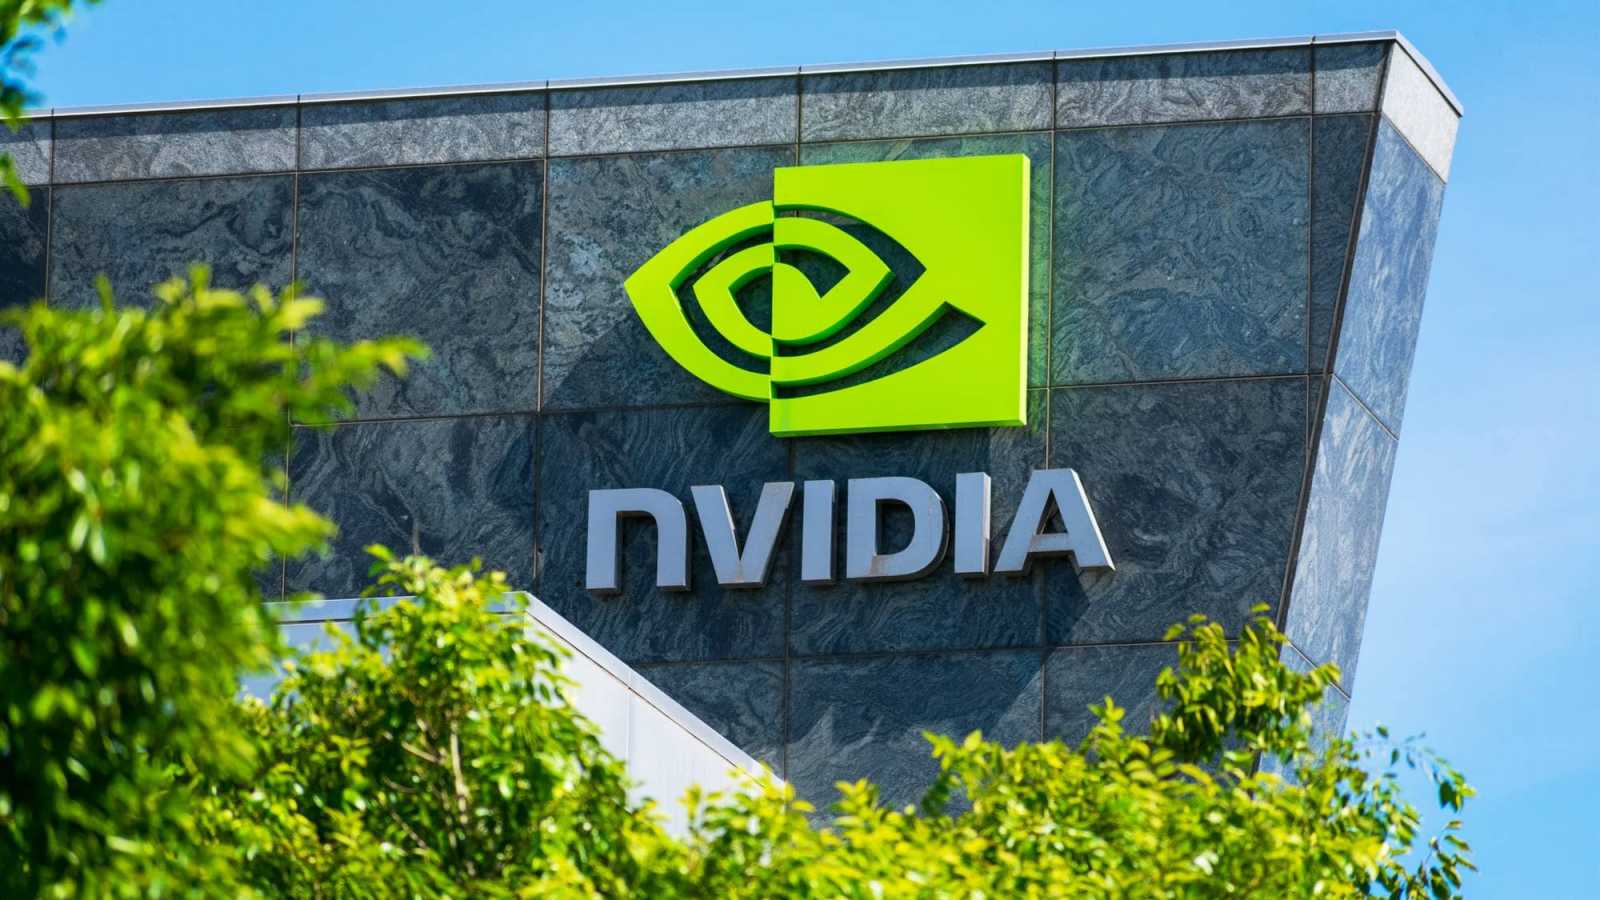 NVIDIA dostala pokutu 5,5 milionů dolarů kvůli zatajení byznysu v miningu